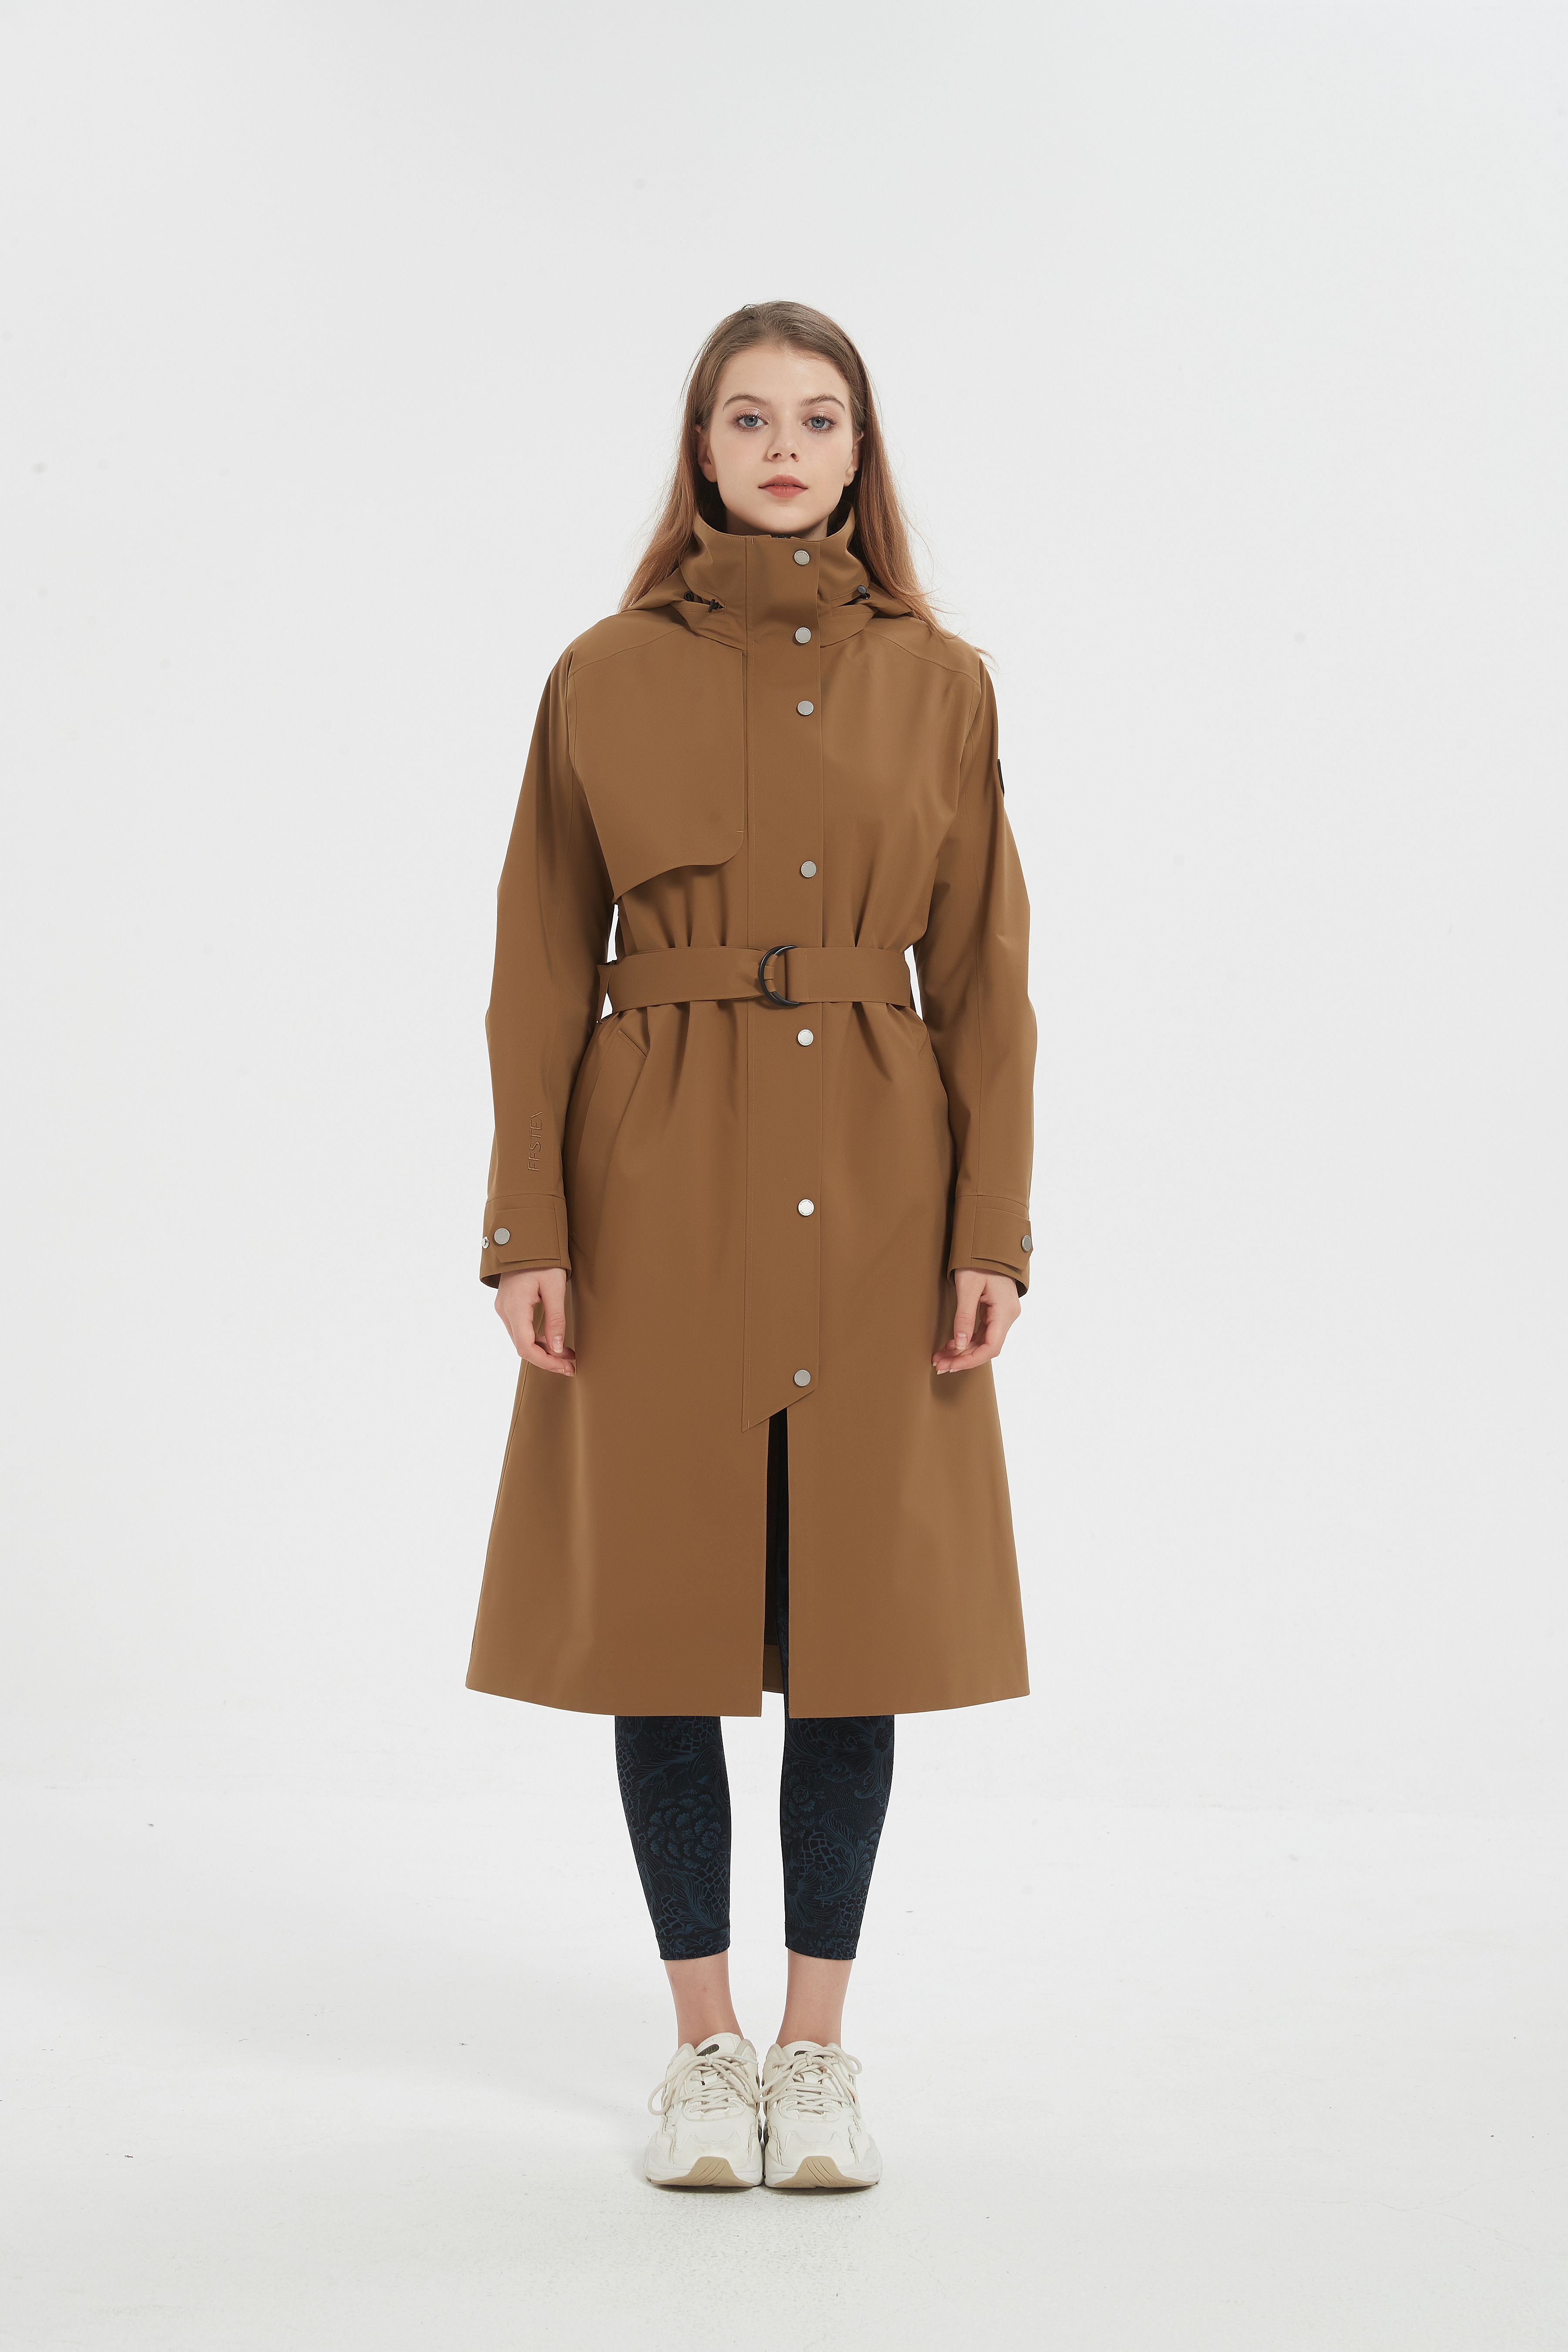 LA24040  Women's trench coat  